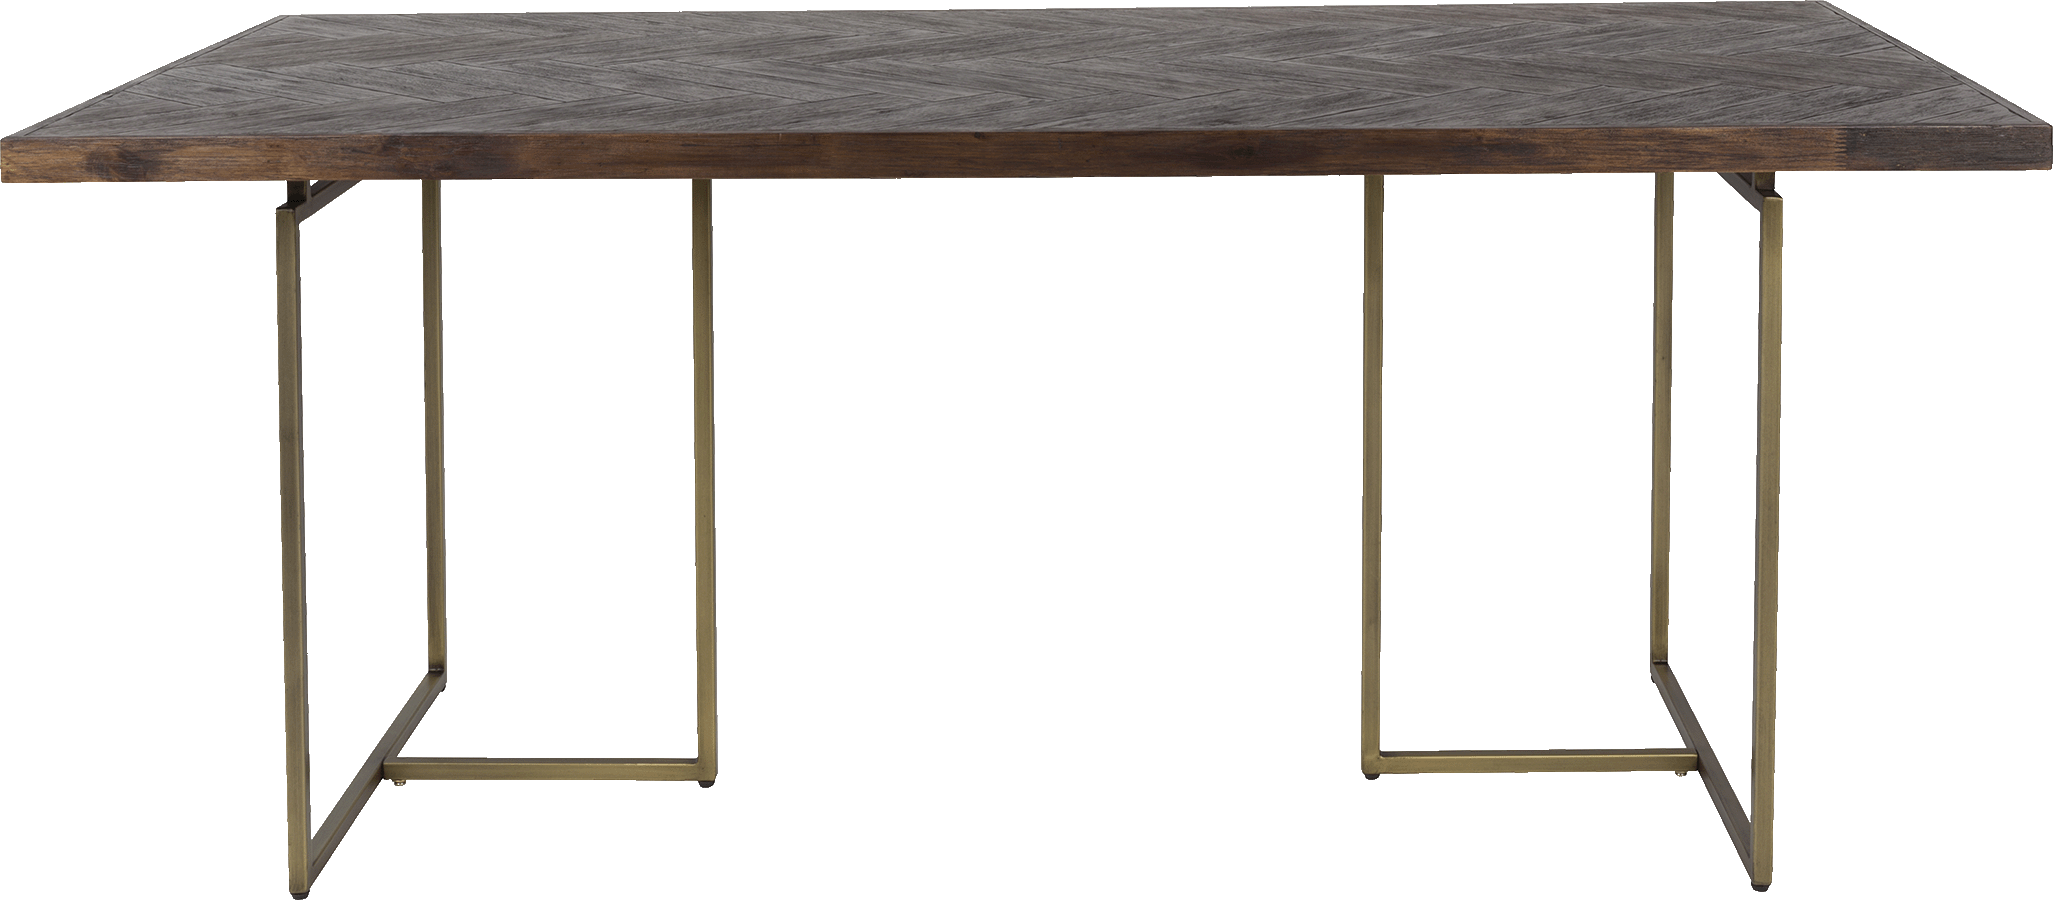 Dutchbone Class jedálenský stôl - Tmavé drevo, 180 x 90 cm